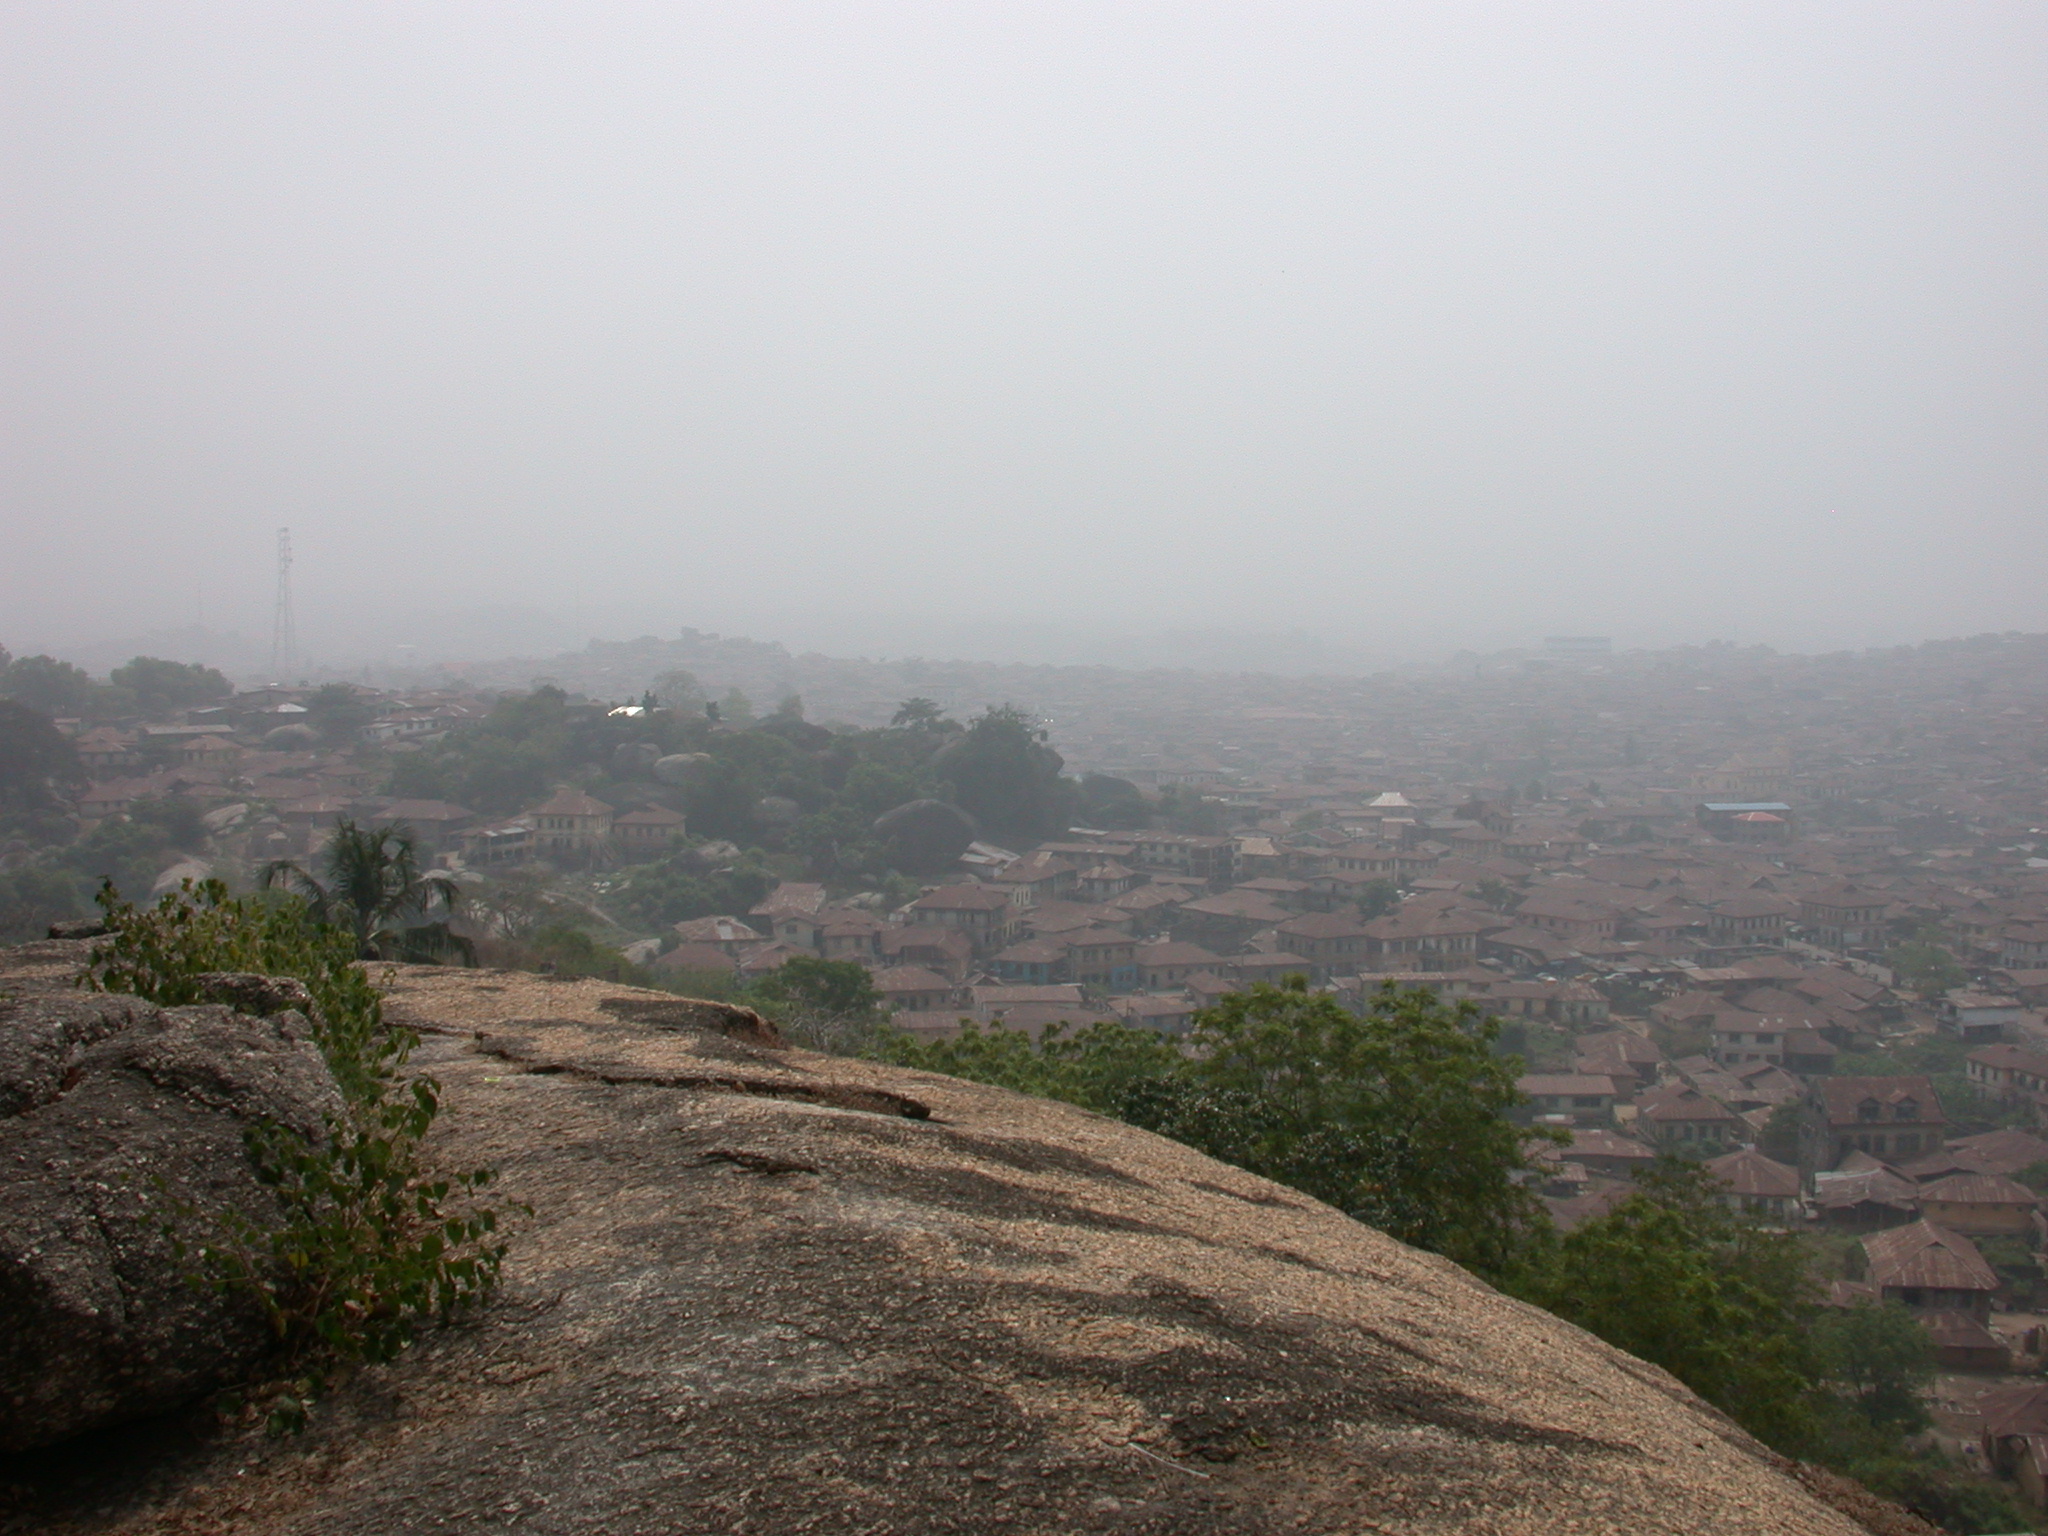 View of City, Olumo Rock, Abeokuta, Nigeria